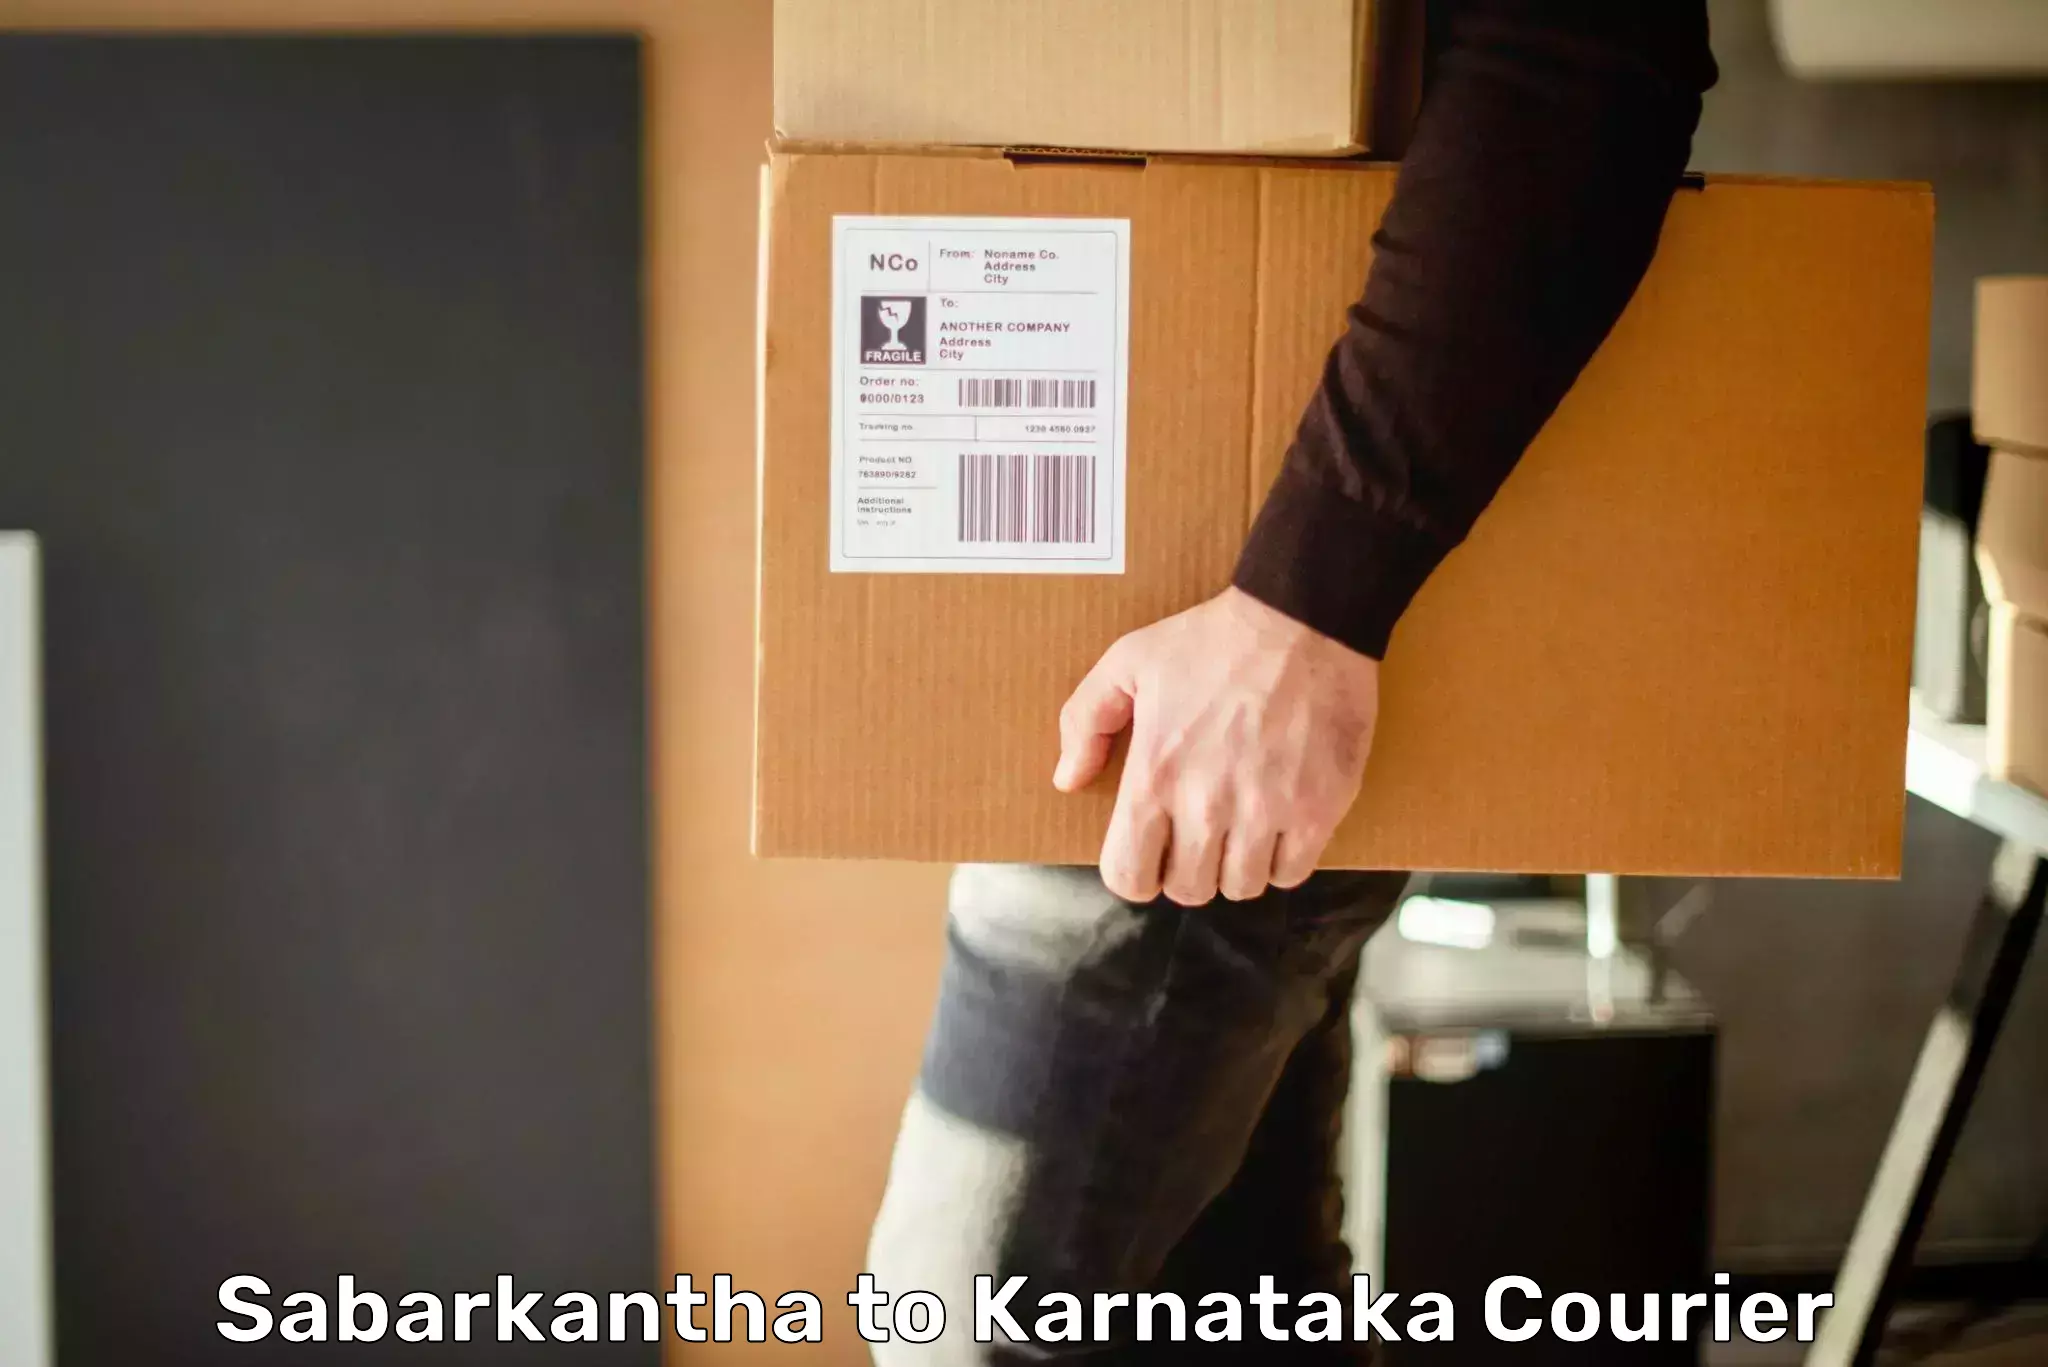 24-hour courier service Sabarkantha to Yenepoya Mangalore